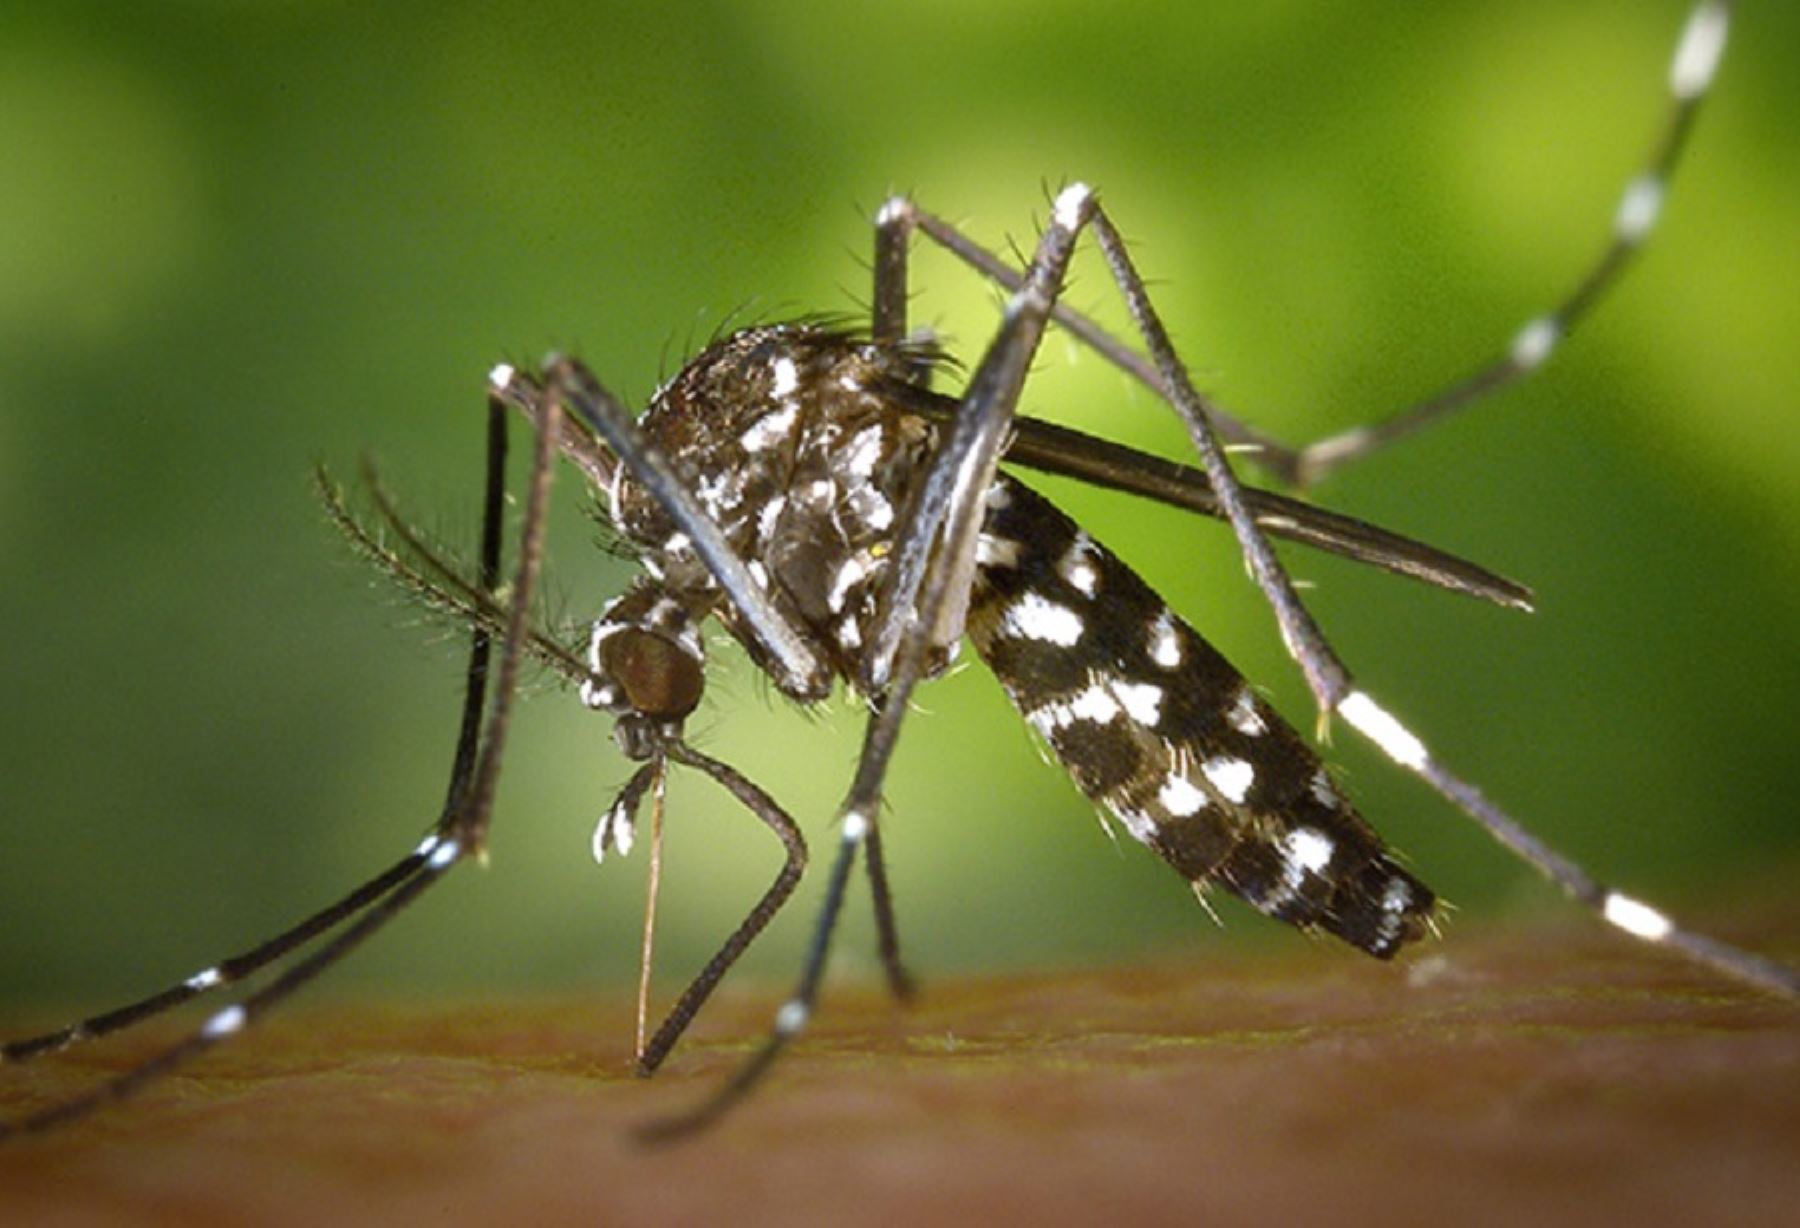 El dengue es una enfermedad infecciosa producida por el virus dengue que se transmite por la hembra del zancudo o mosquito llamado Aedes aegypti, que se reproduce en los depósitos de agua de consumo humano en las viviendas.